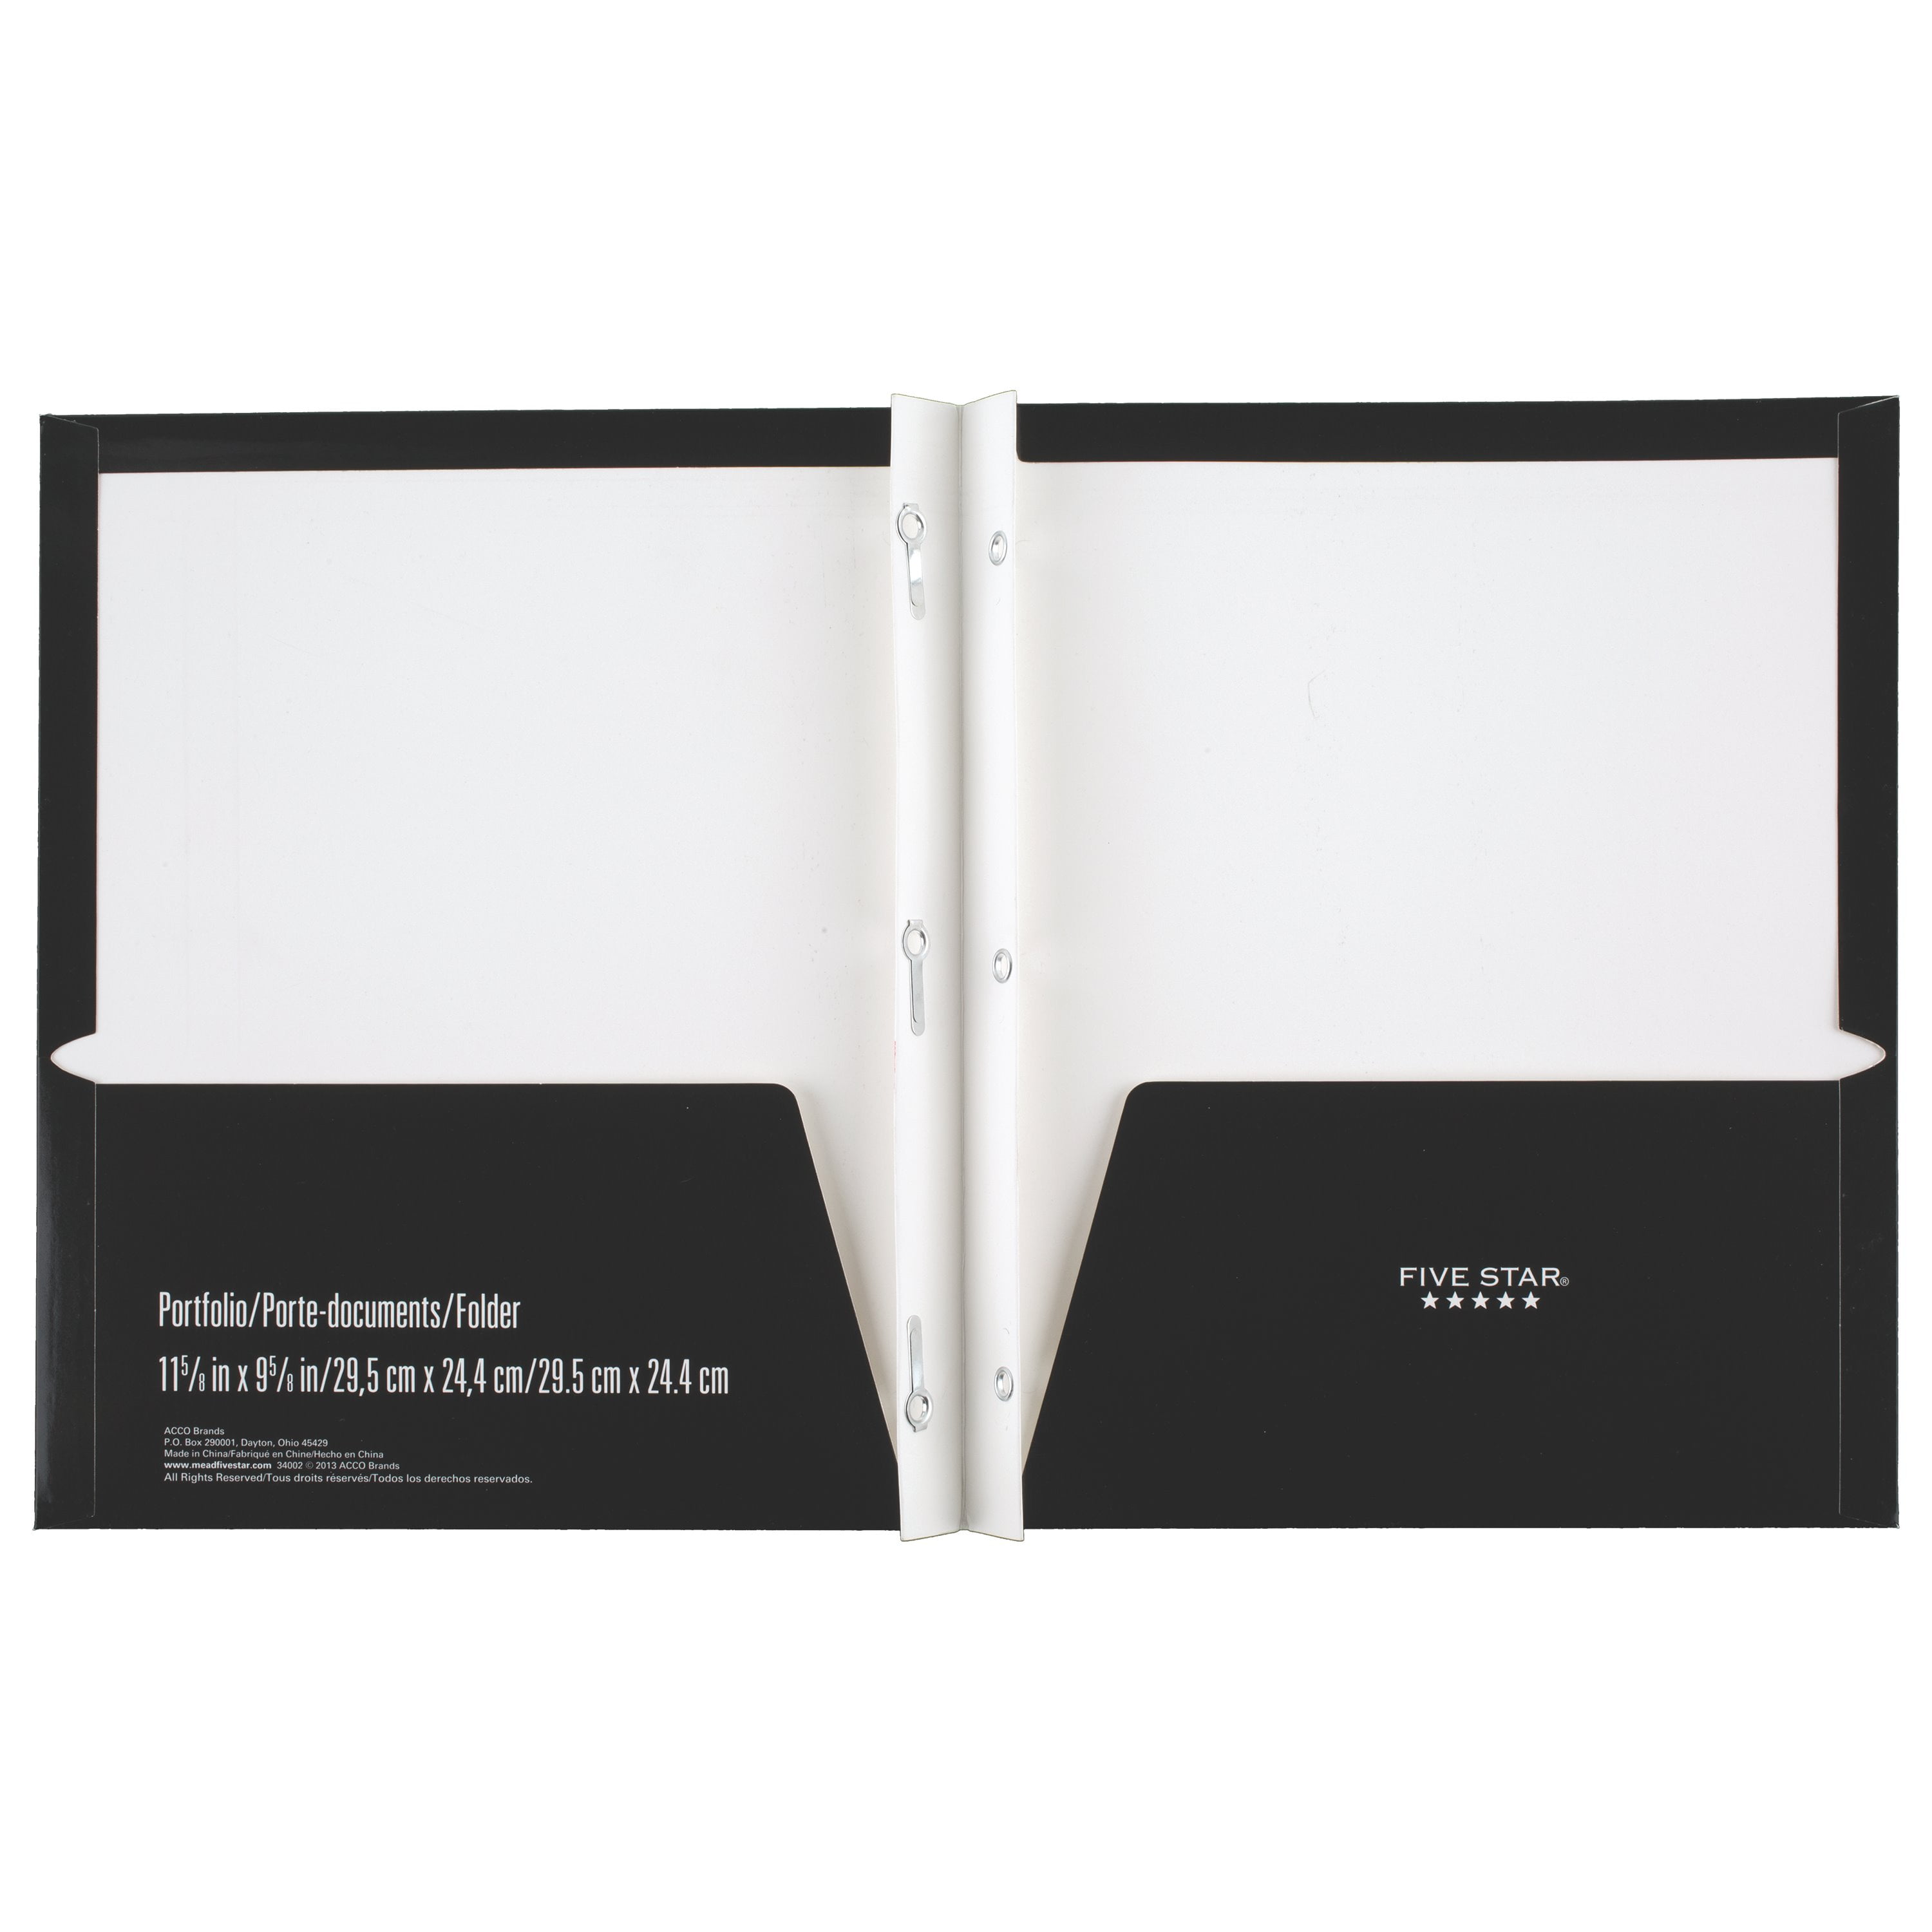 Five Star 2 Pocket Paper Folder Black and Gold - D3 Surplus Outlet